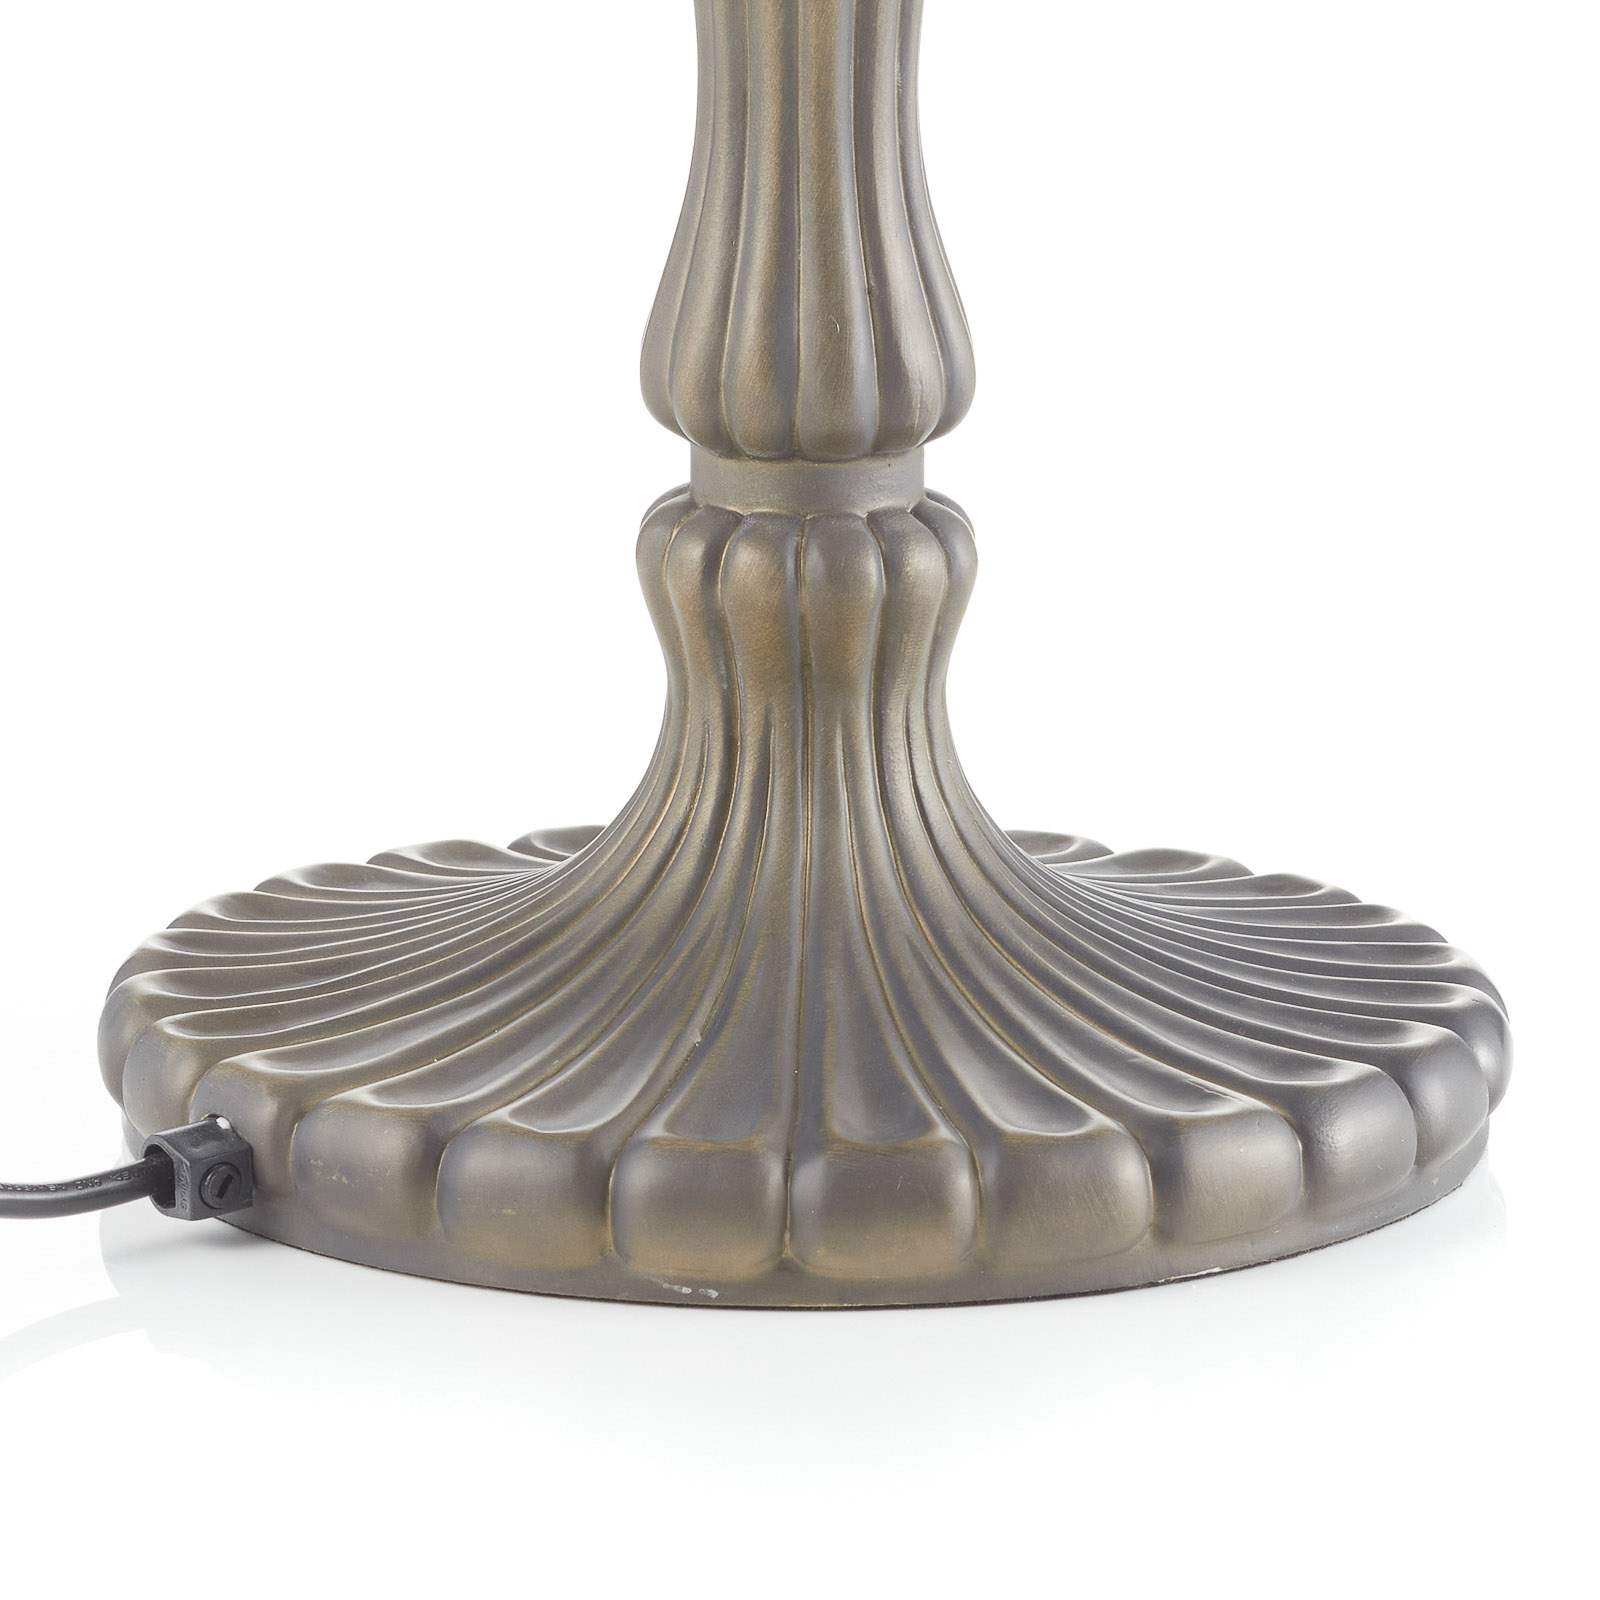 Majstrovská stolná lampa Austrália, štýl Tiffany